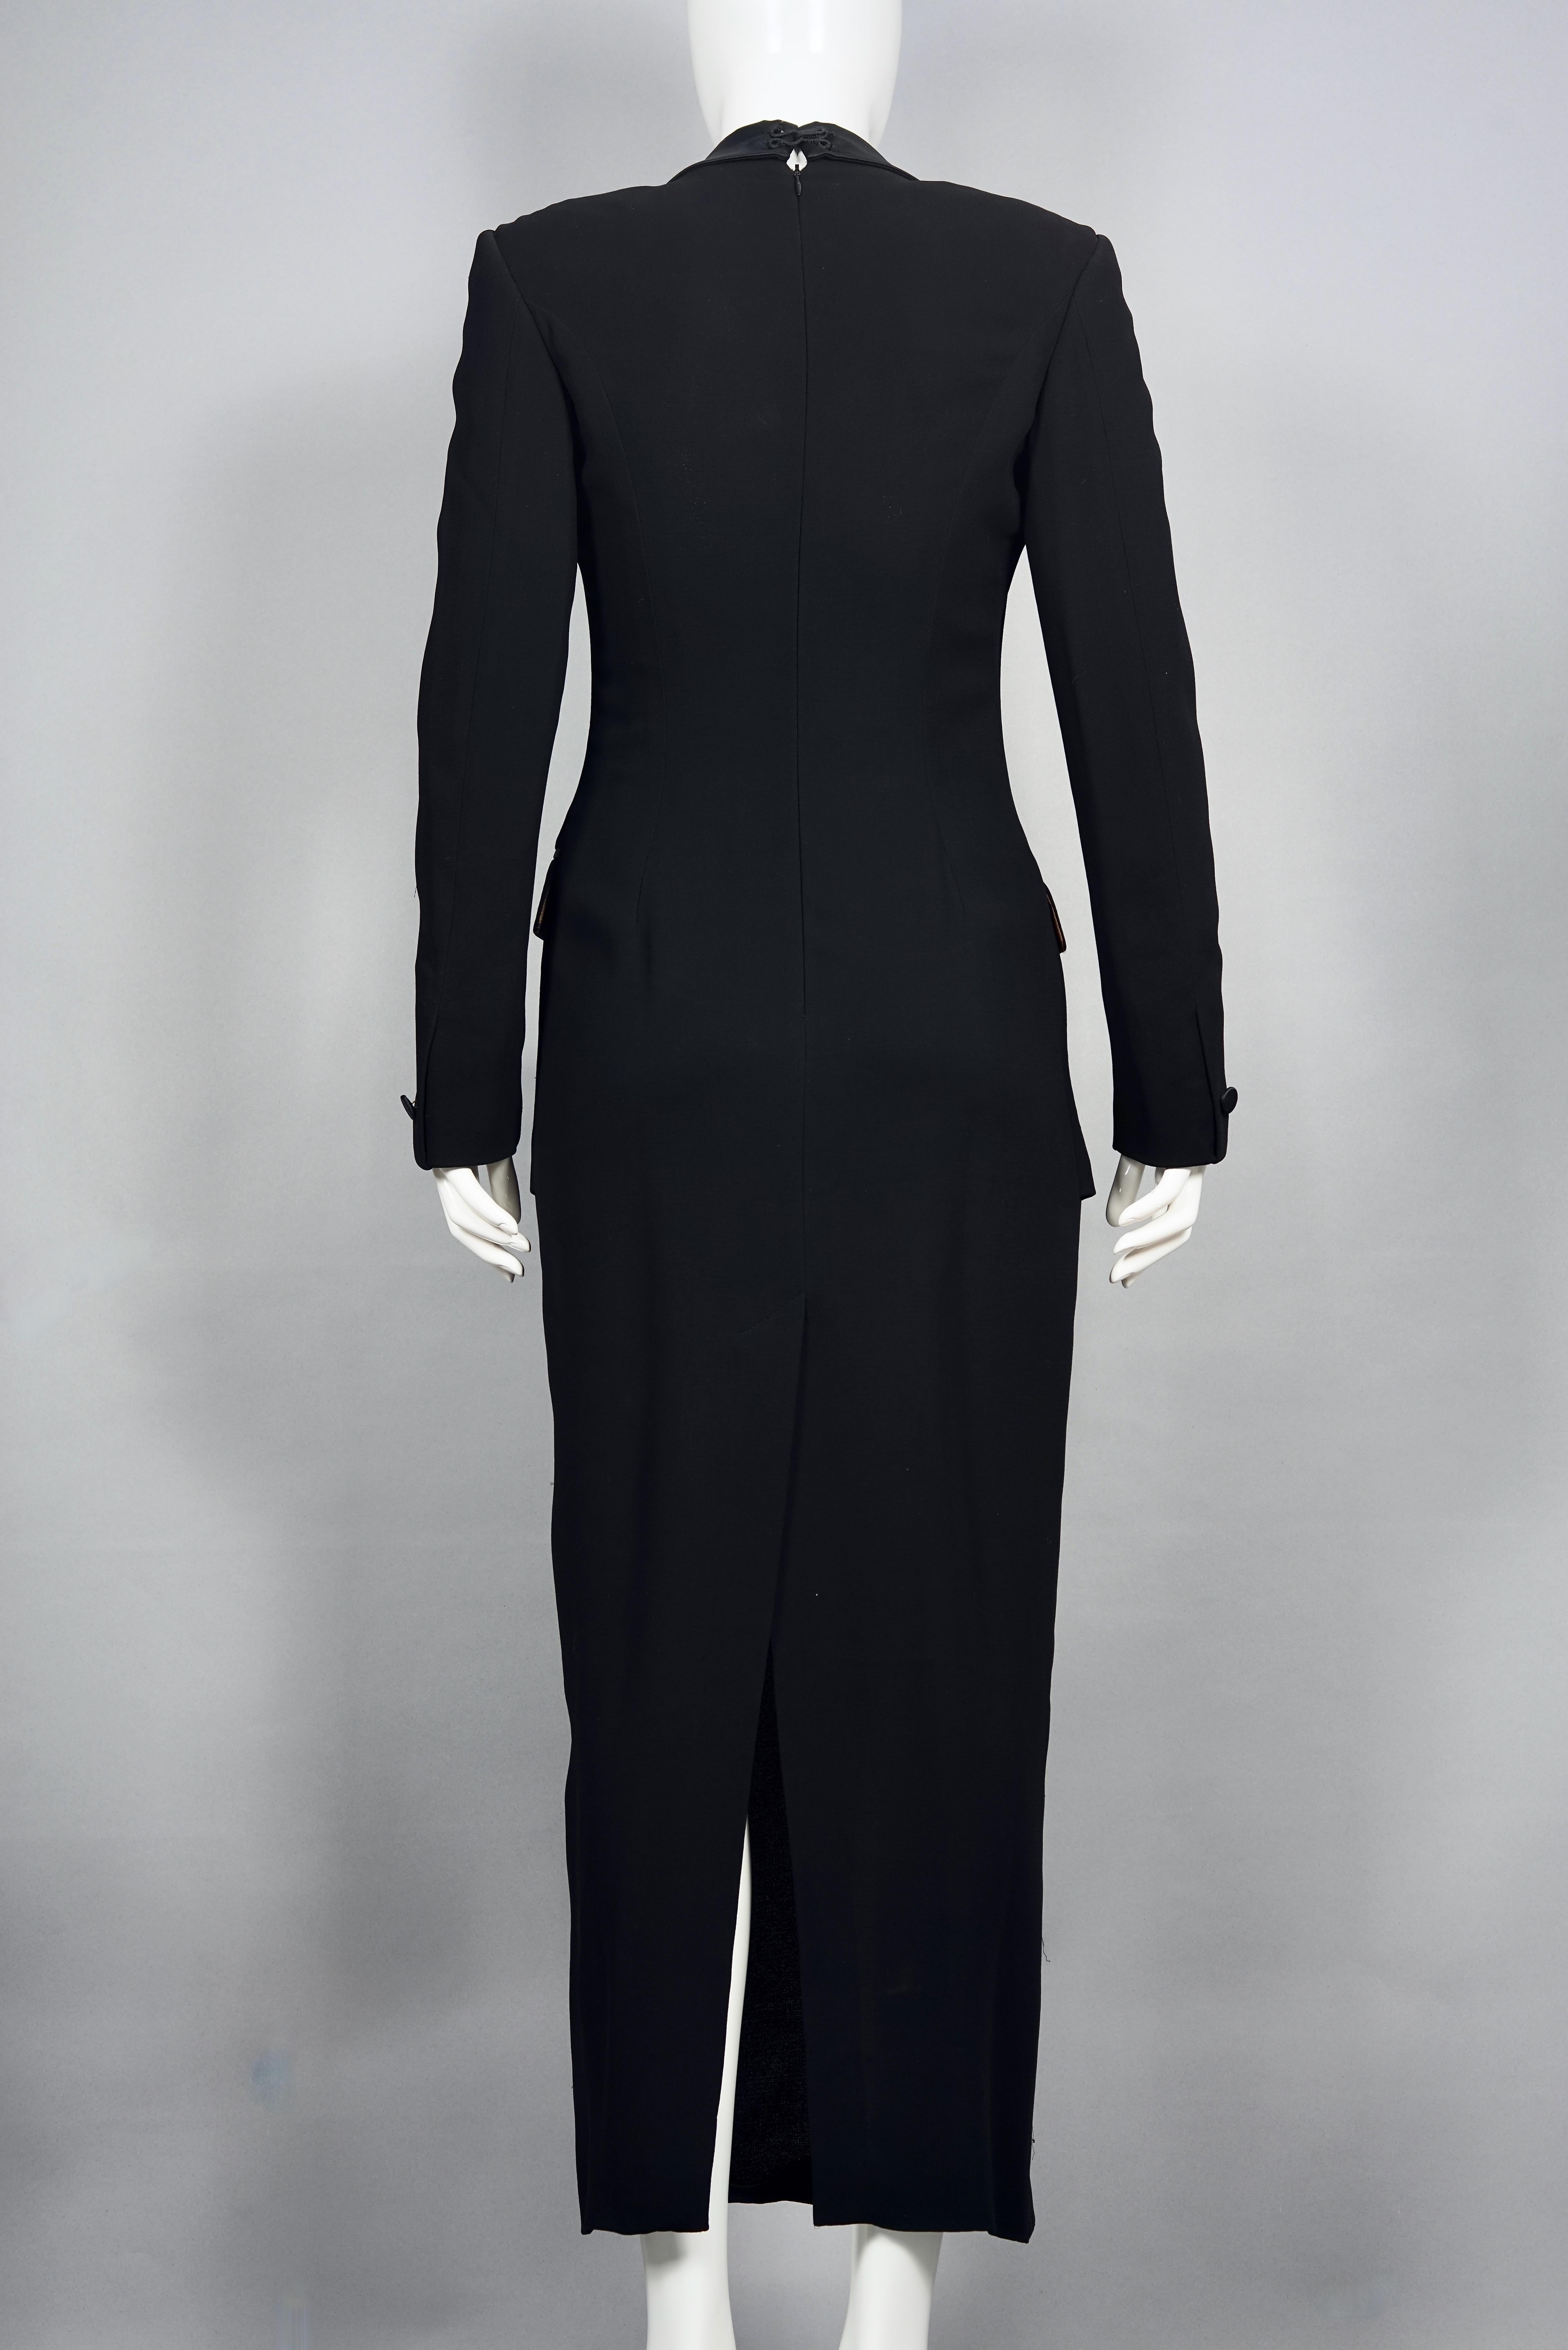 Vintage JEAN PAUL GAULTIER Trompe L'oeil Smoking Black Tuxedo Long Dress For Sale 2